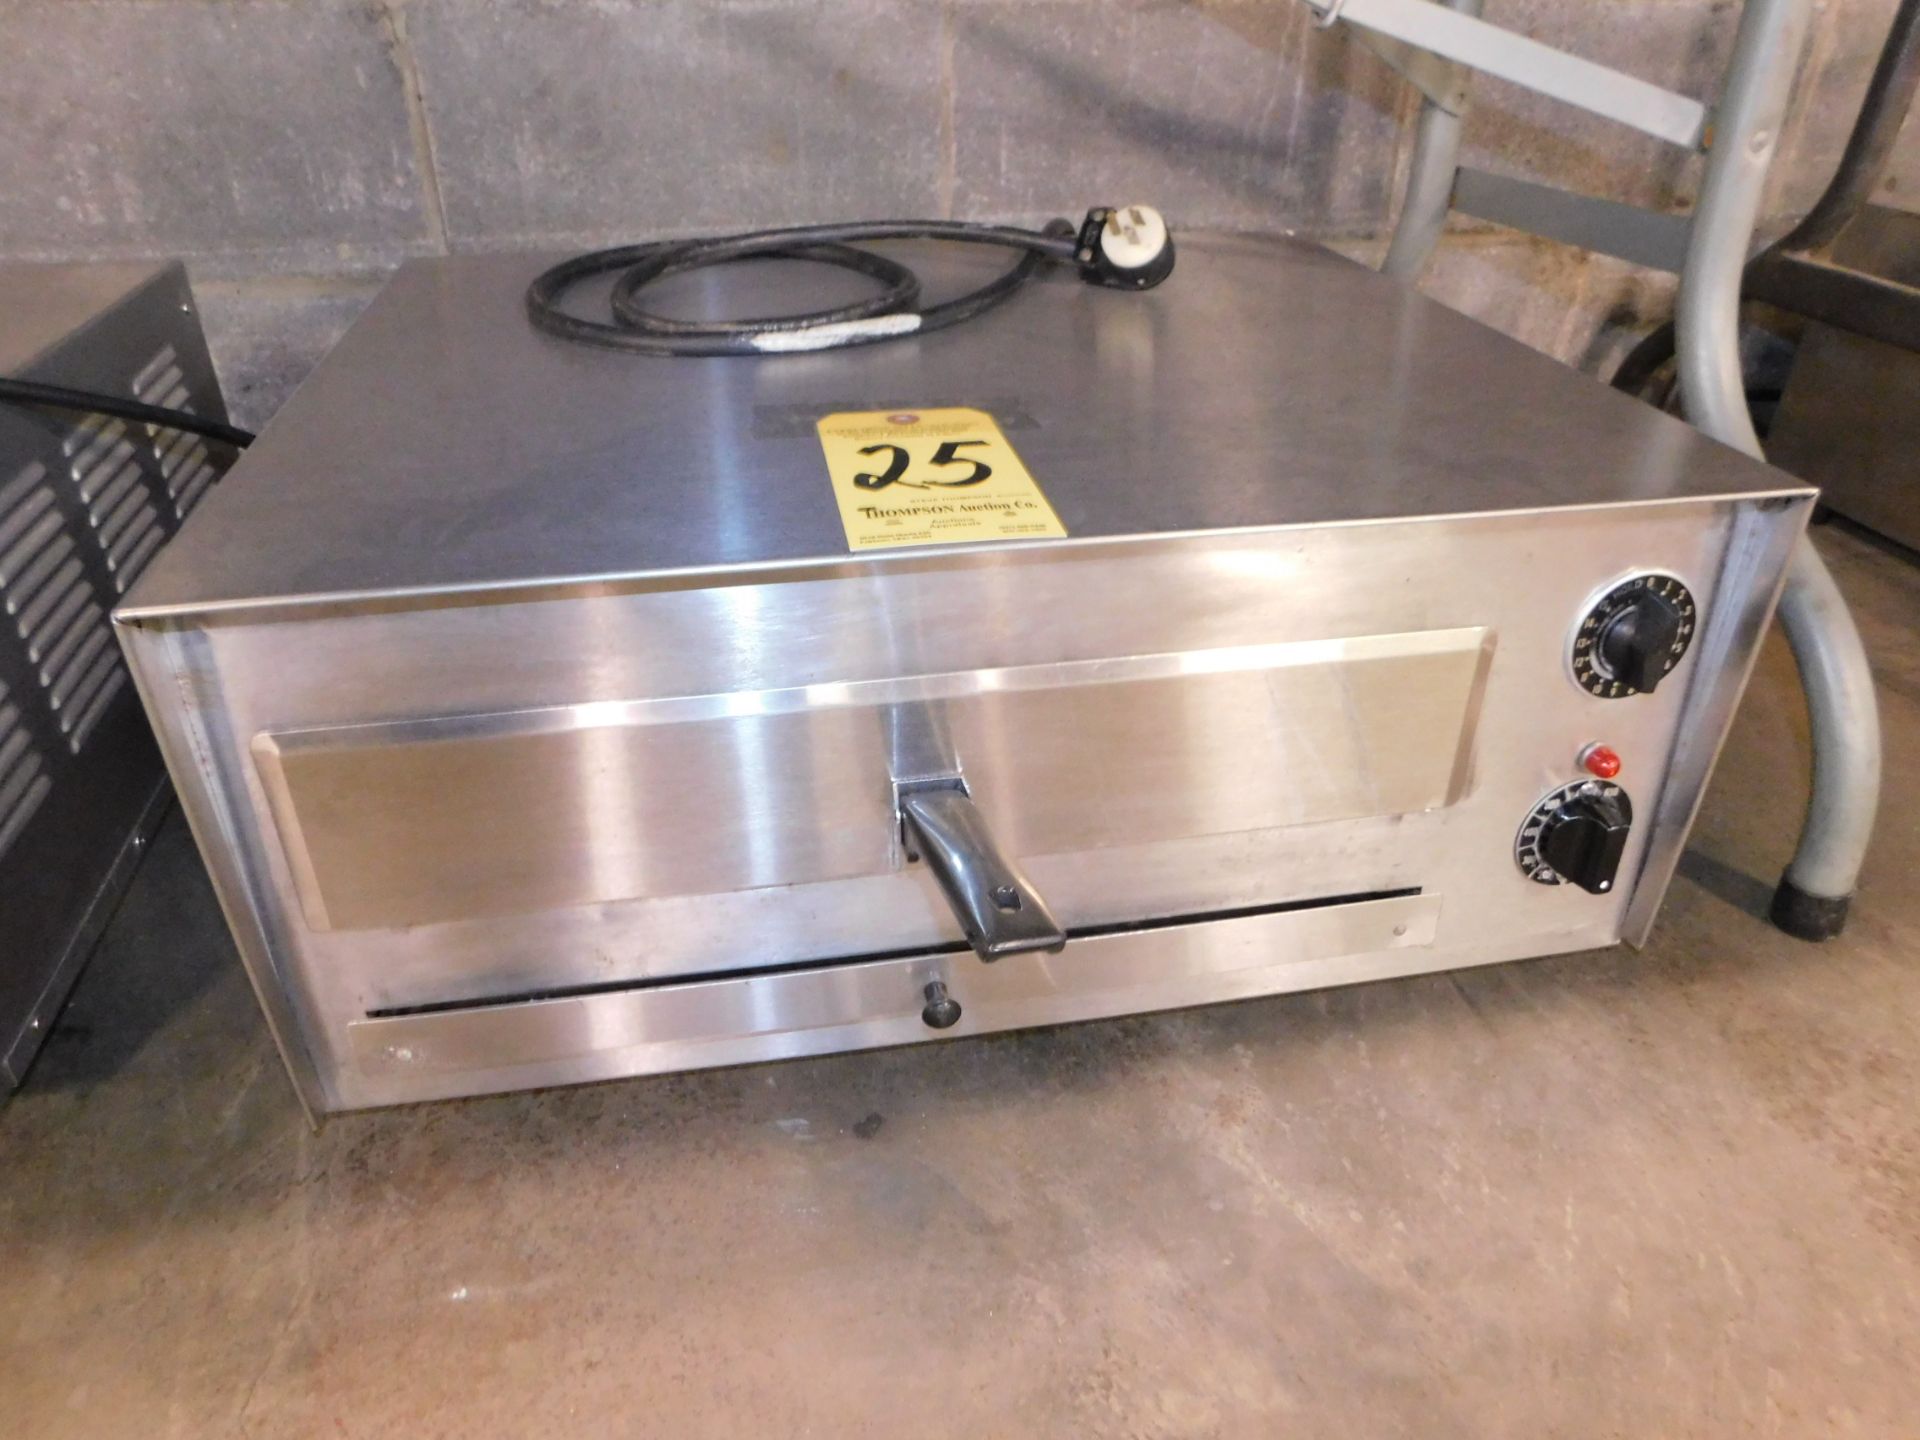 J&J Model 560 Pizza/Multipurpose Oven